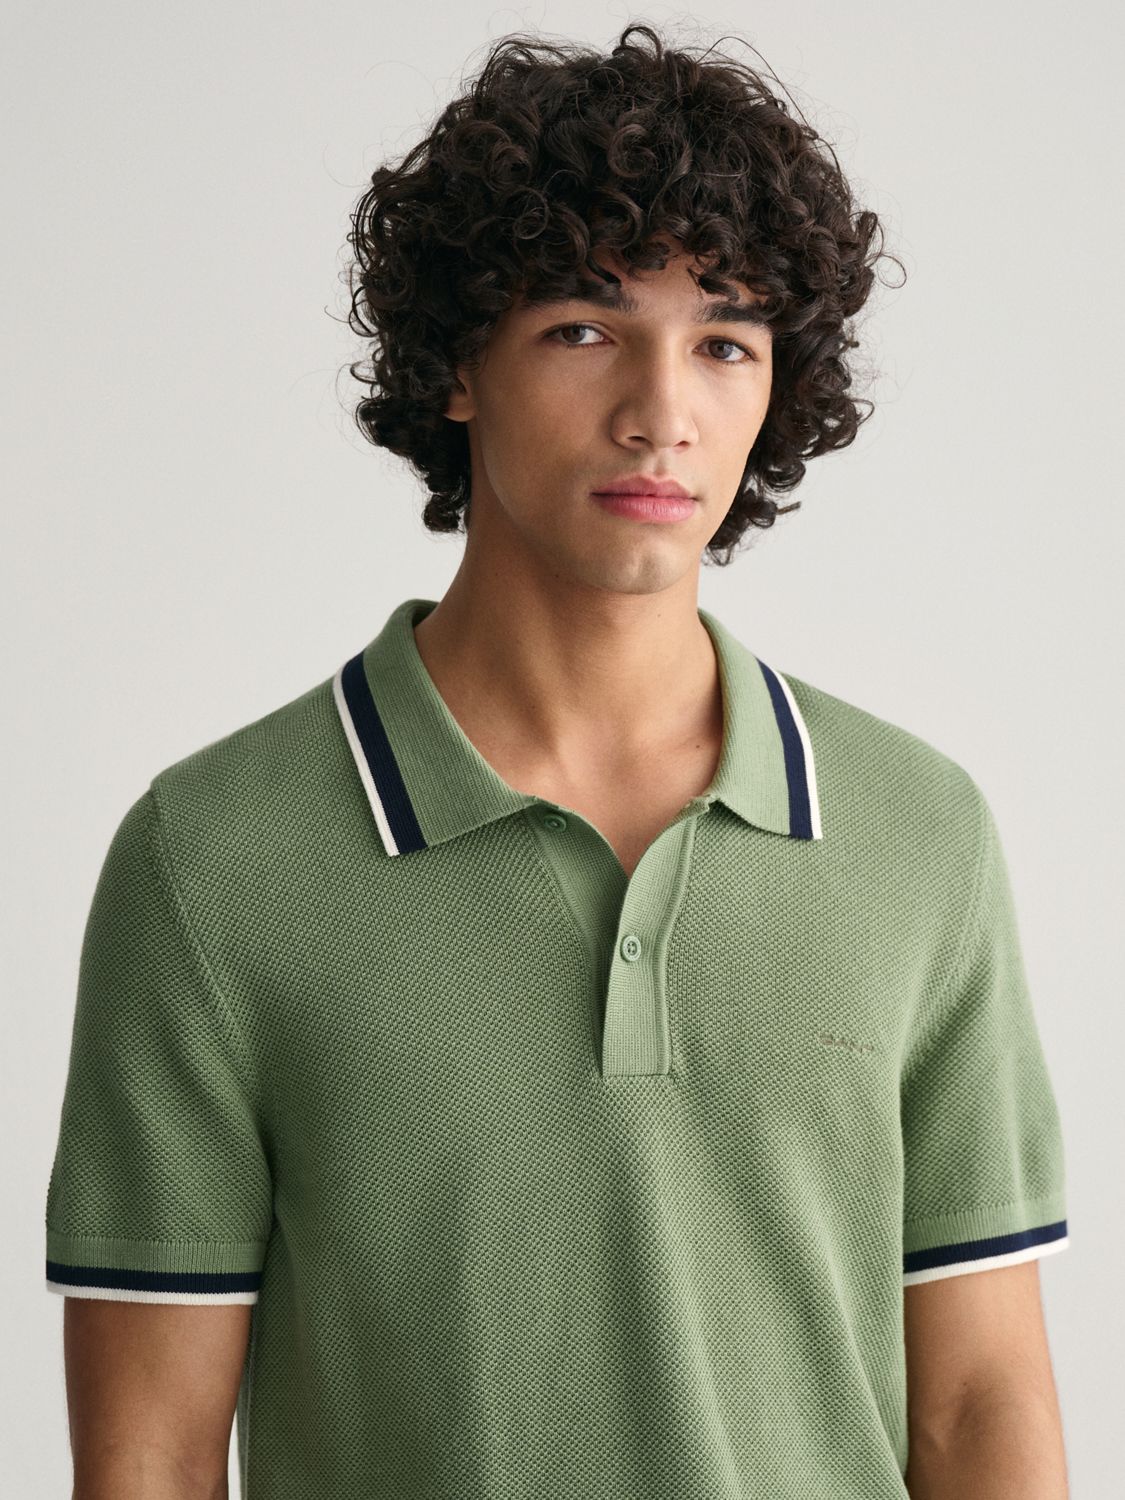 GANT Cotton Pique Short Sleeve Polo Shirt, Green, M